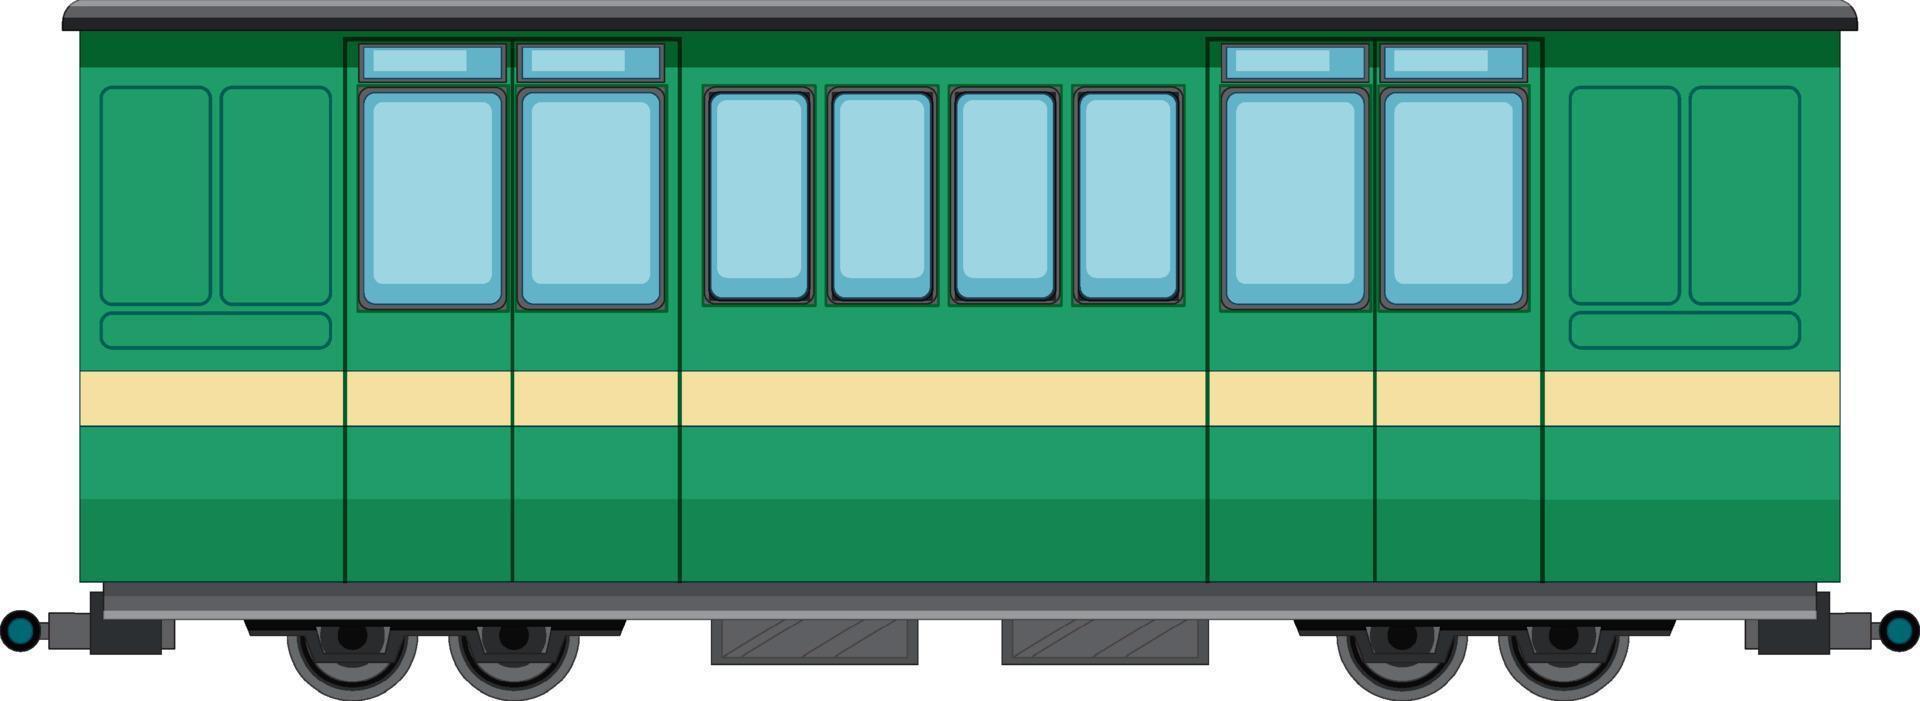 contenitore di carico del treno merci su sfondo bianco vettore